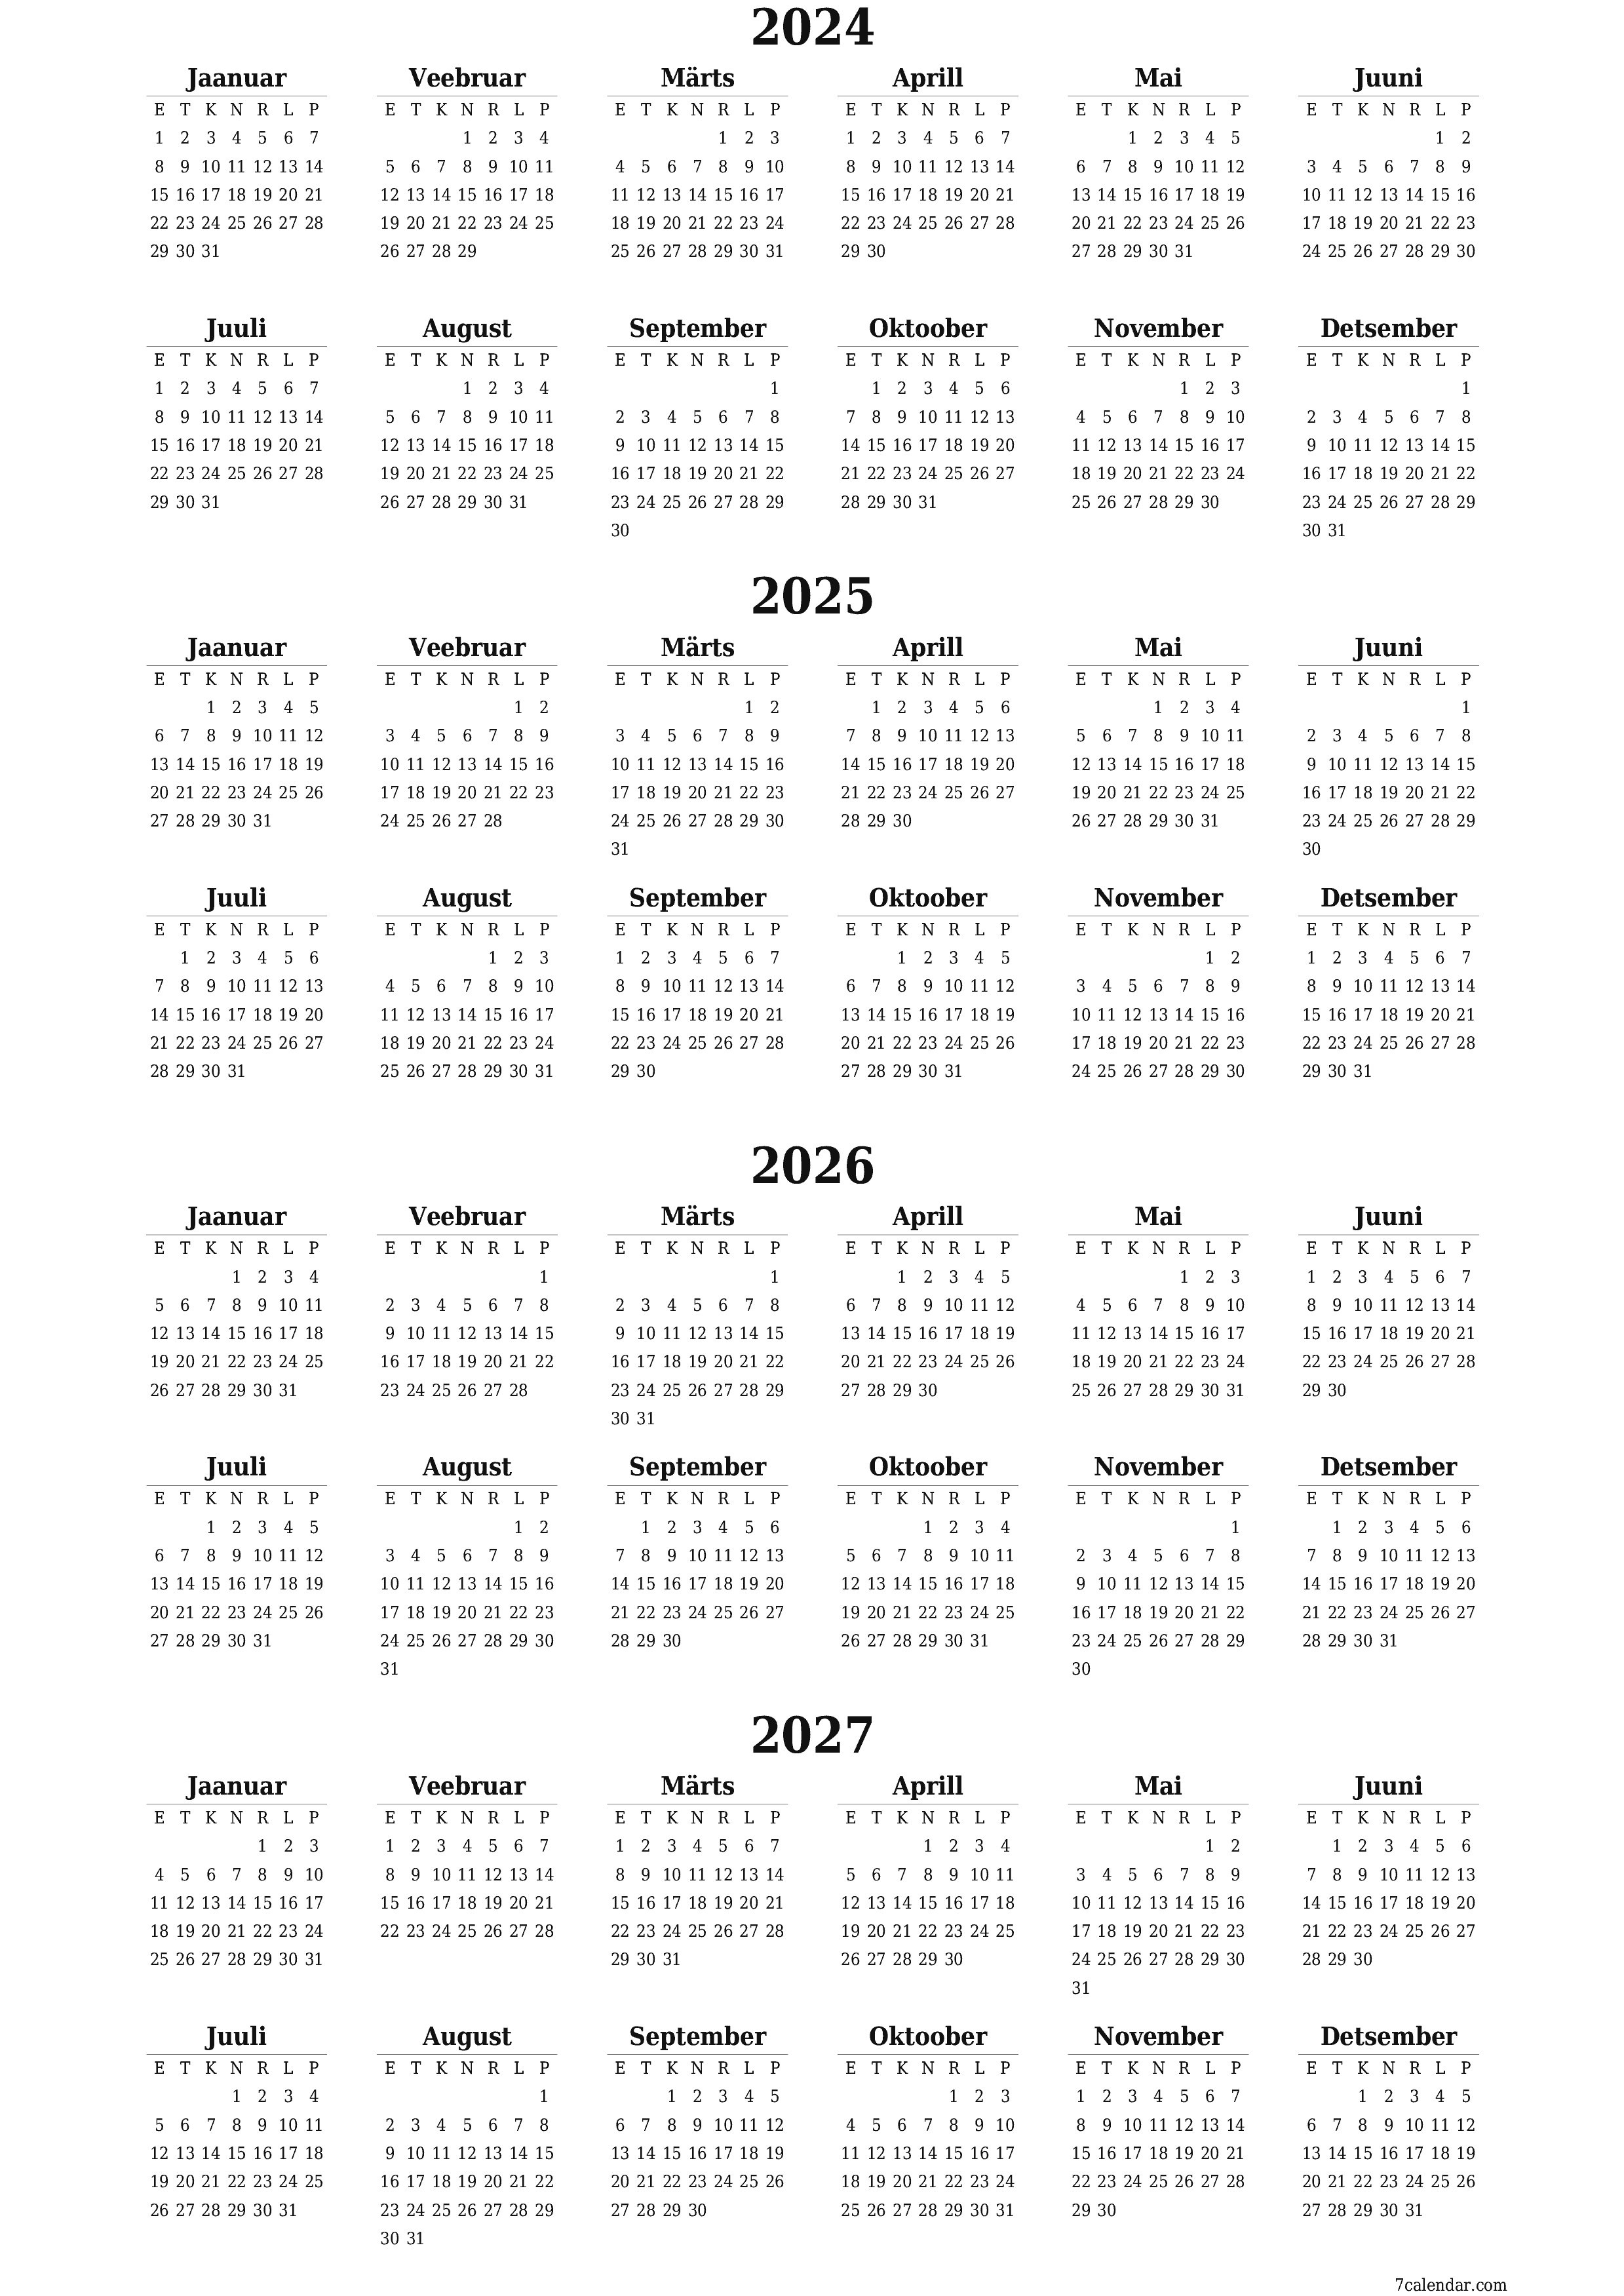 prinditav seina kalendri mall tasuta vertikaalne Iga-aastane kalender Detsember (Dets) 2024